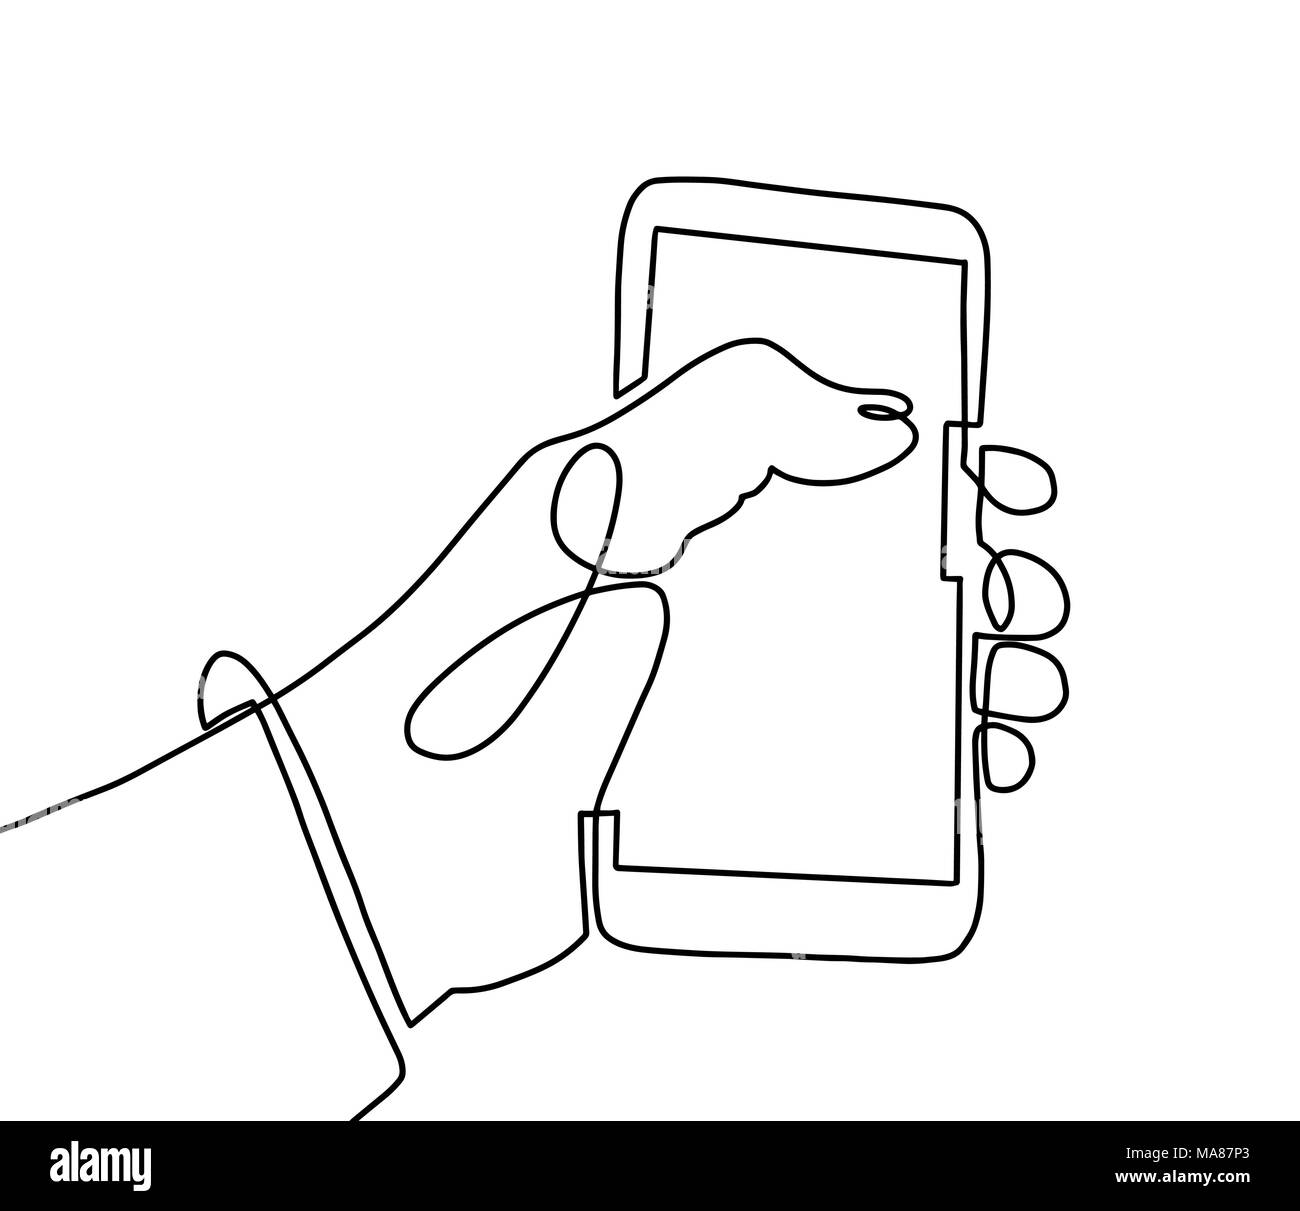 Une ligne continue de dessin d'art la main à l'aide de téléphone mobile Illustration de Vecteur